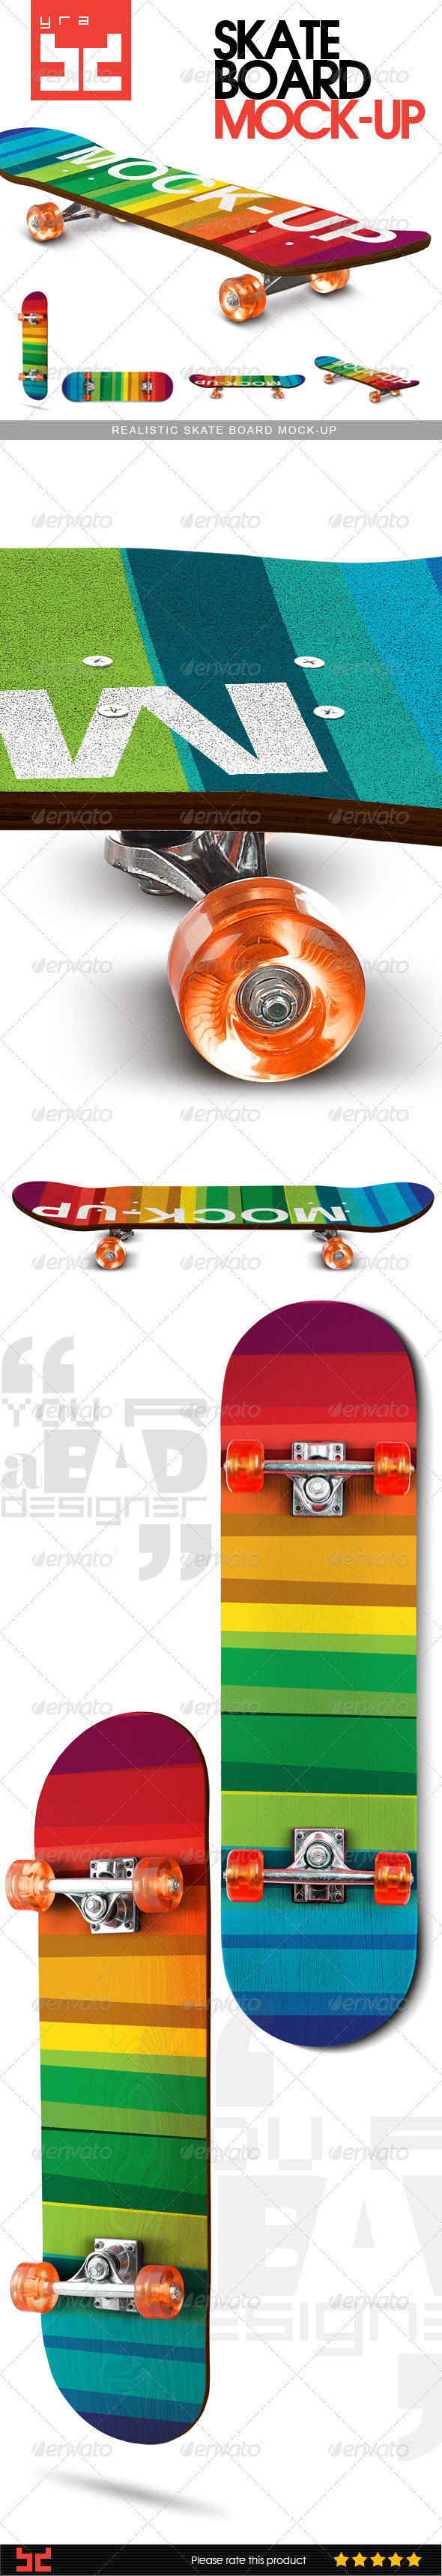 Skate board mockup